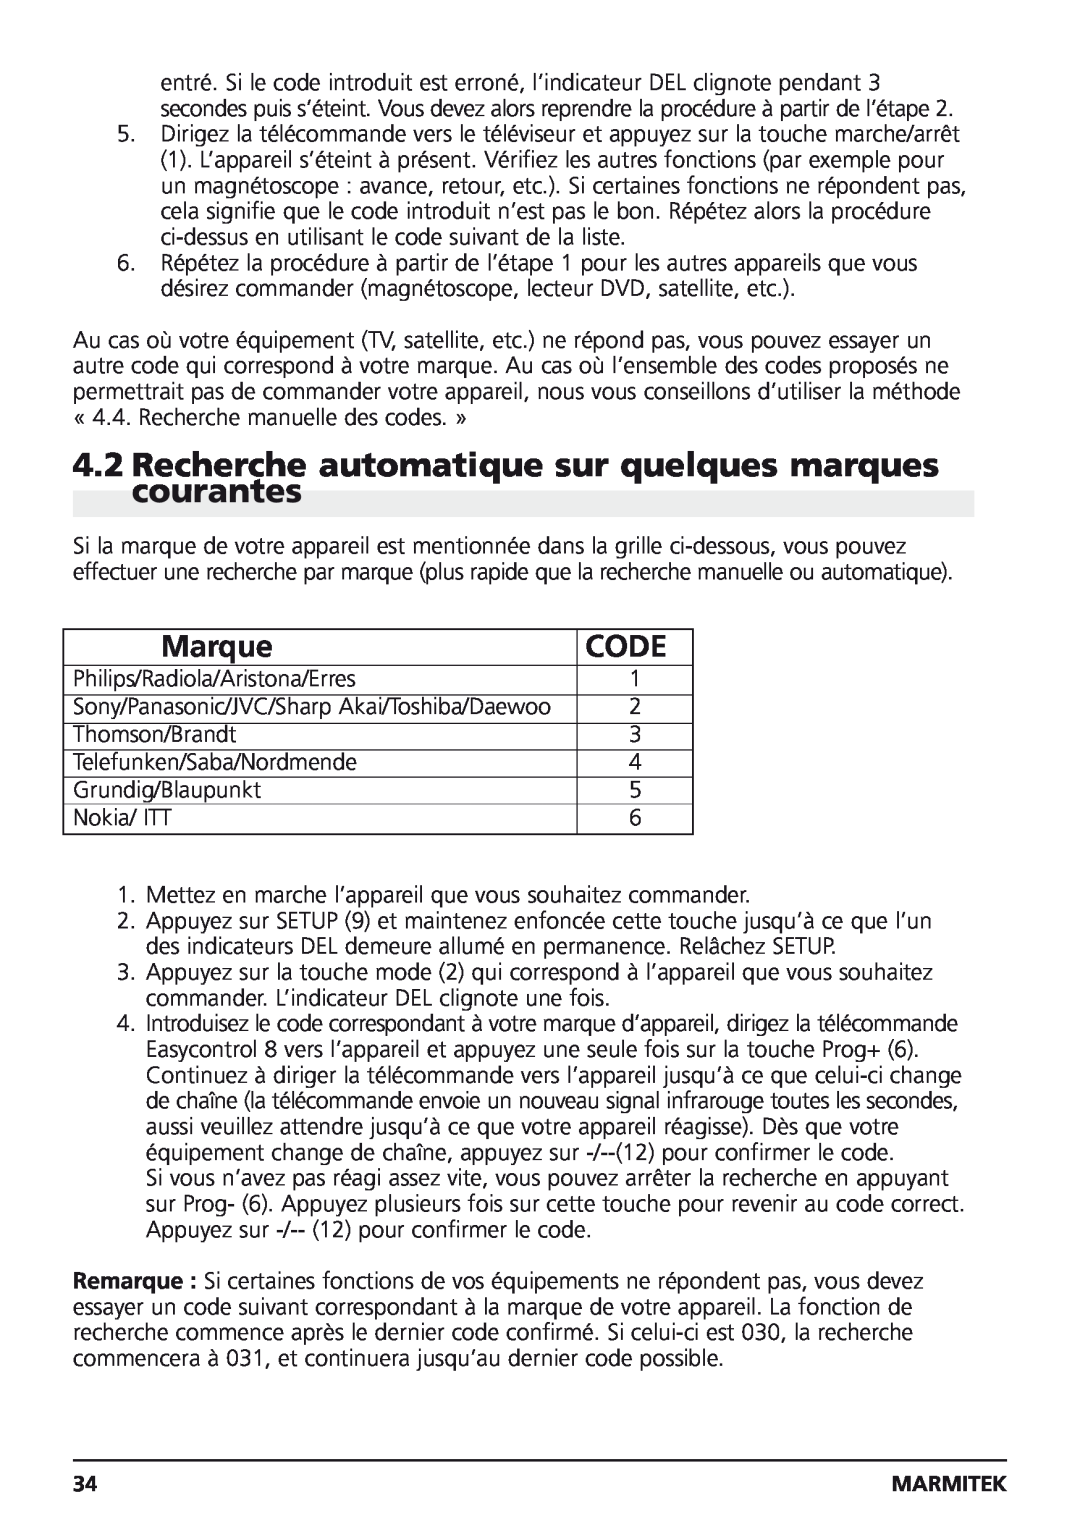 Marmitek Easycontrol 8 owner manual Recherche automatique sur quelques marques courantes, Marque, Code 